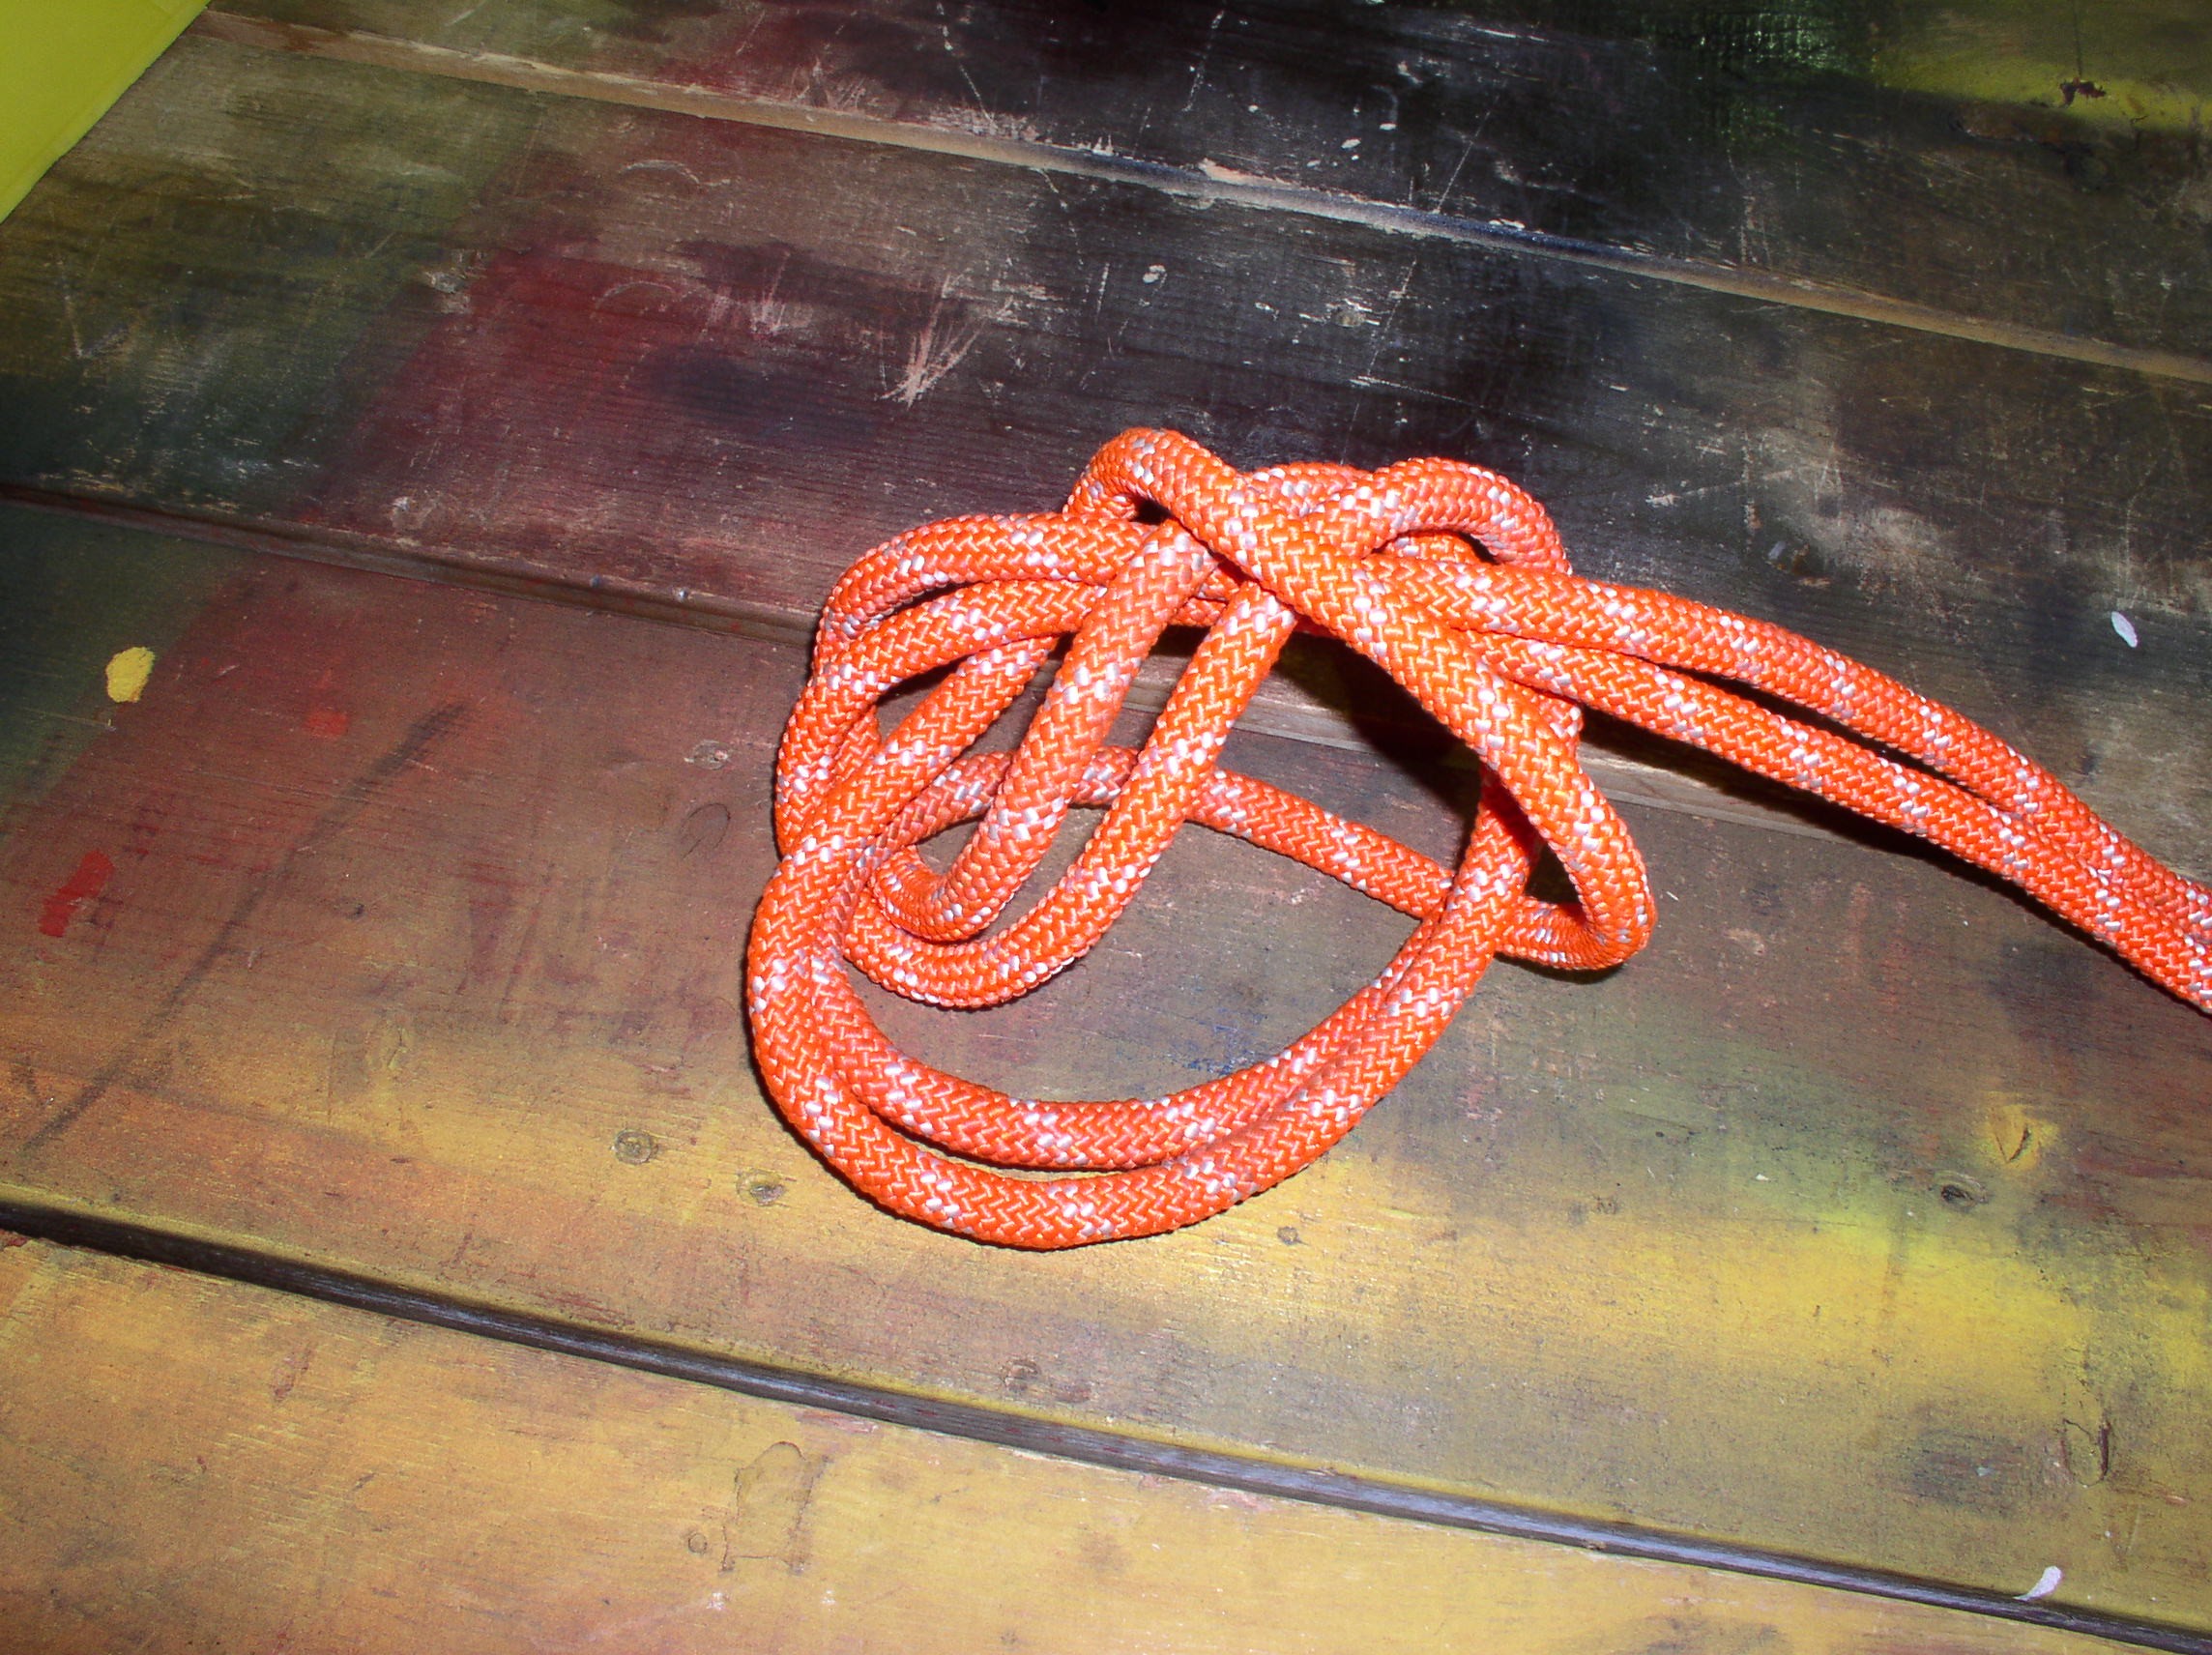 02-16-05  Training - Rope Rescue